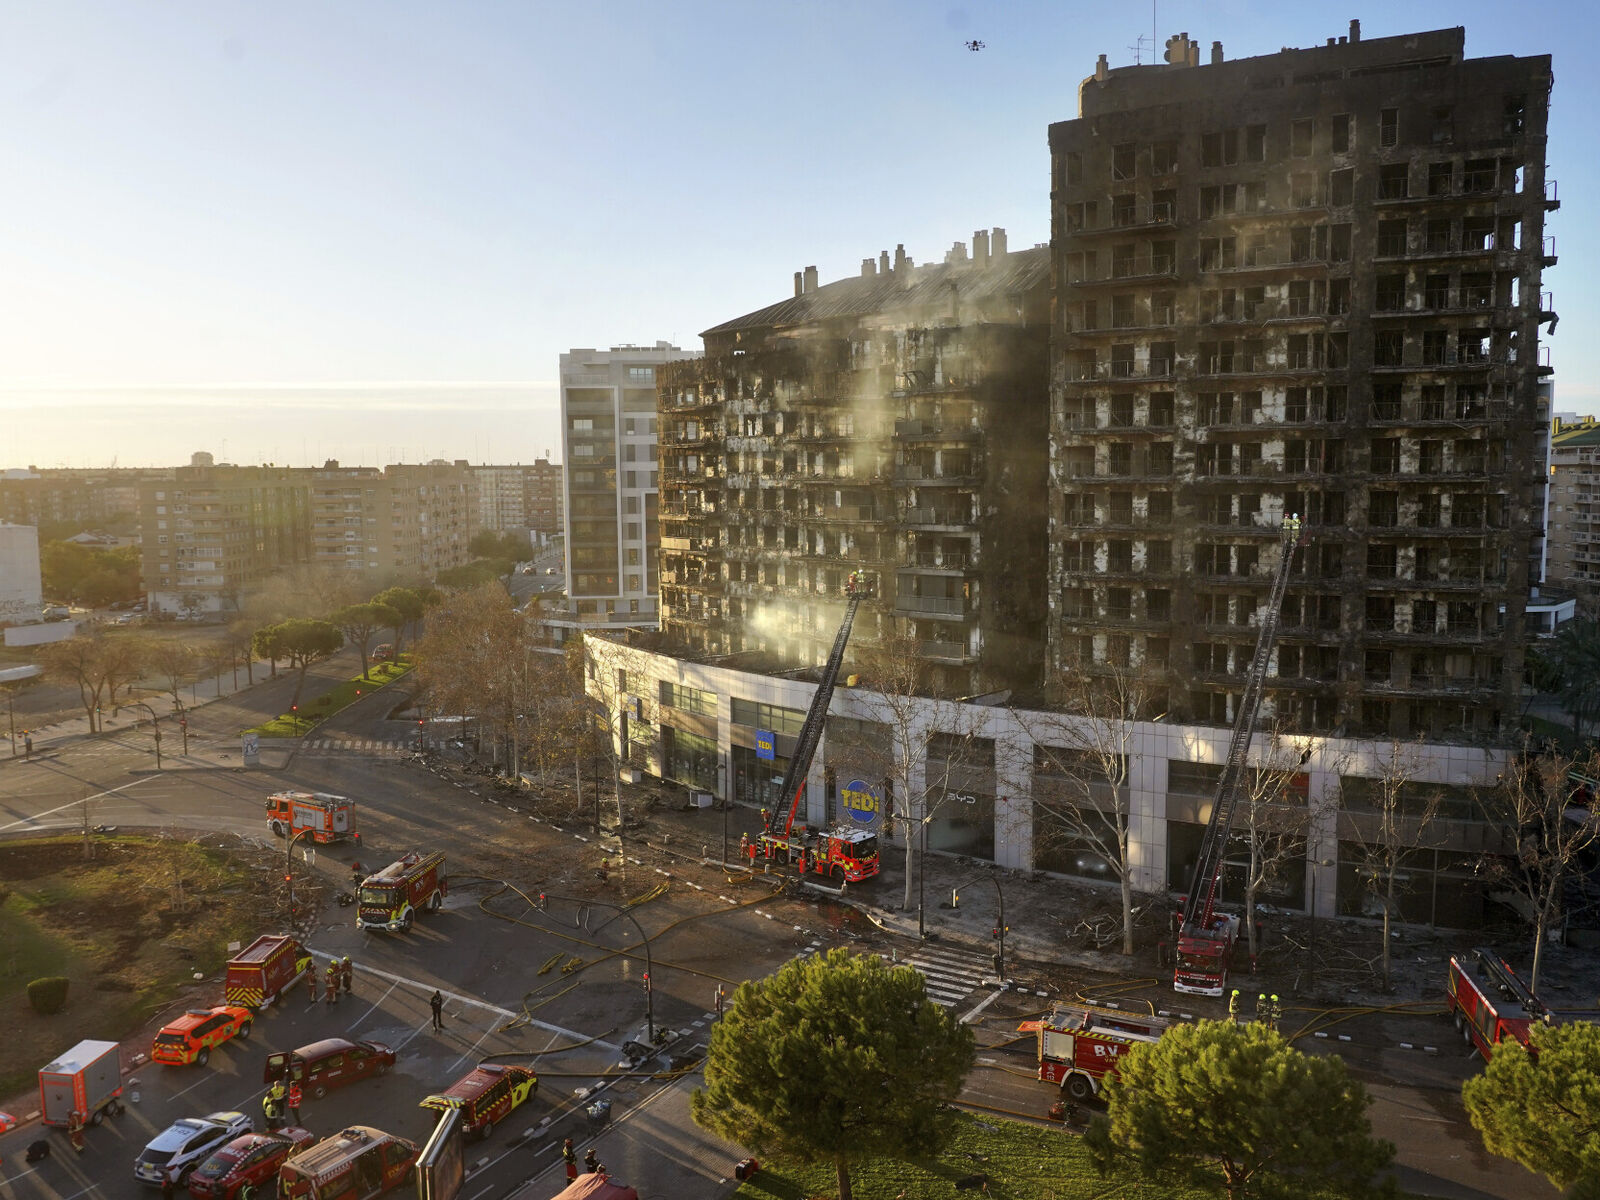 Begge leilighetsblokkene i byen Valencia øst i Spania, gikk raskt opp i flammer da det brøt ut en brann i den ene blokka torsdag 22. februar. Brannen spredte seg i en enorm fart, og blir nå sammenlignet med brannen i Grenfell Tower i London i 2017. Foto: NTB/Alberto Saiz